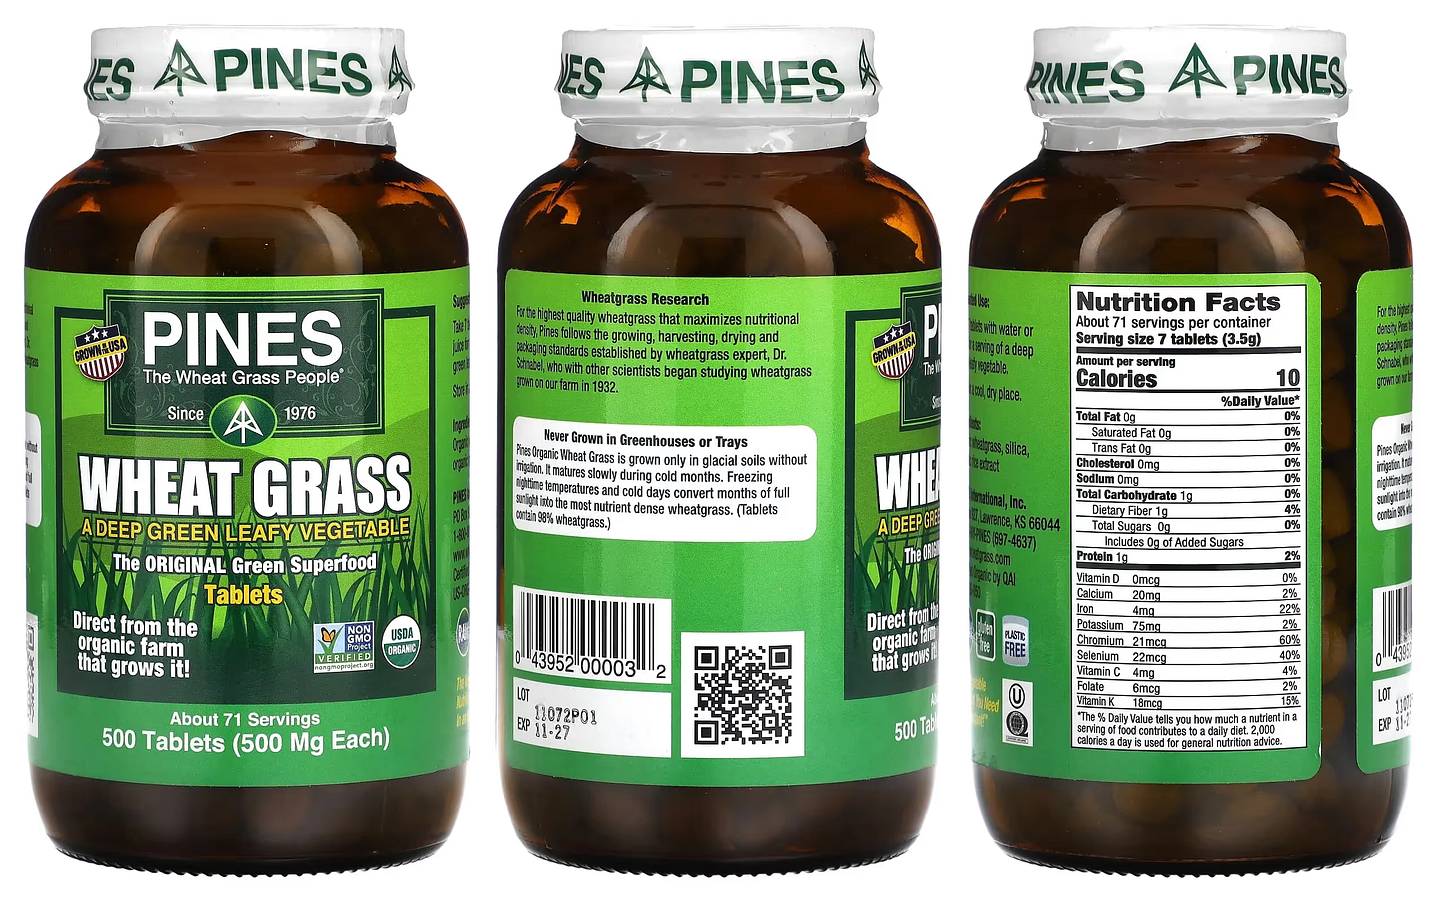 Pines International, Wheat Grass packaging